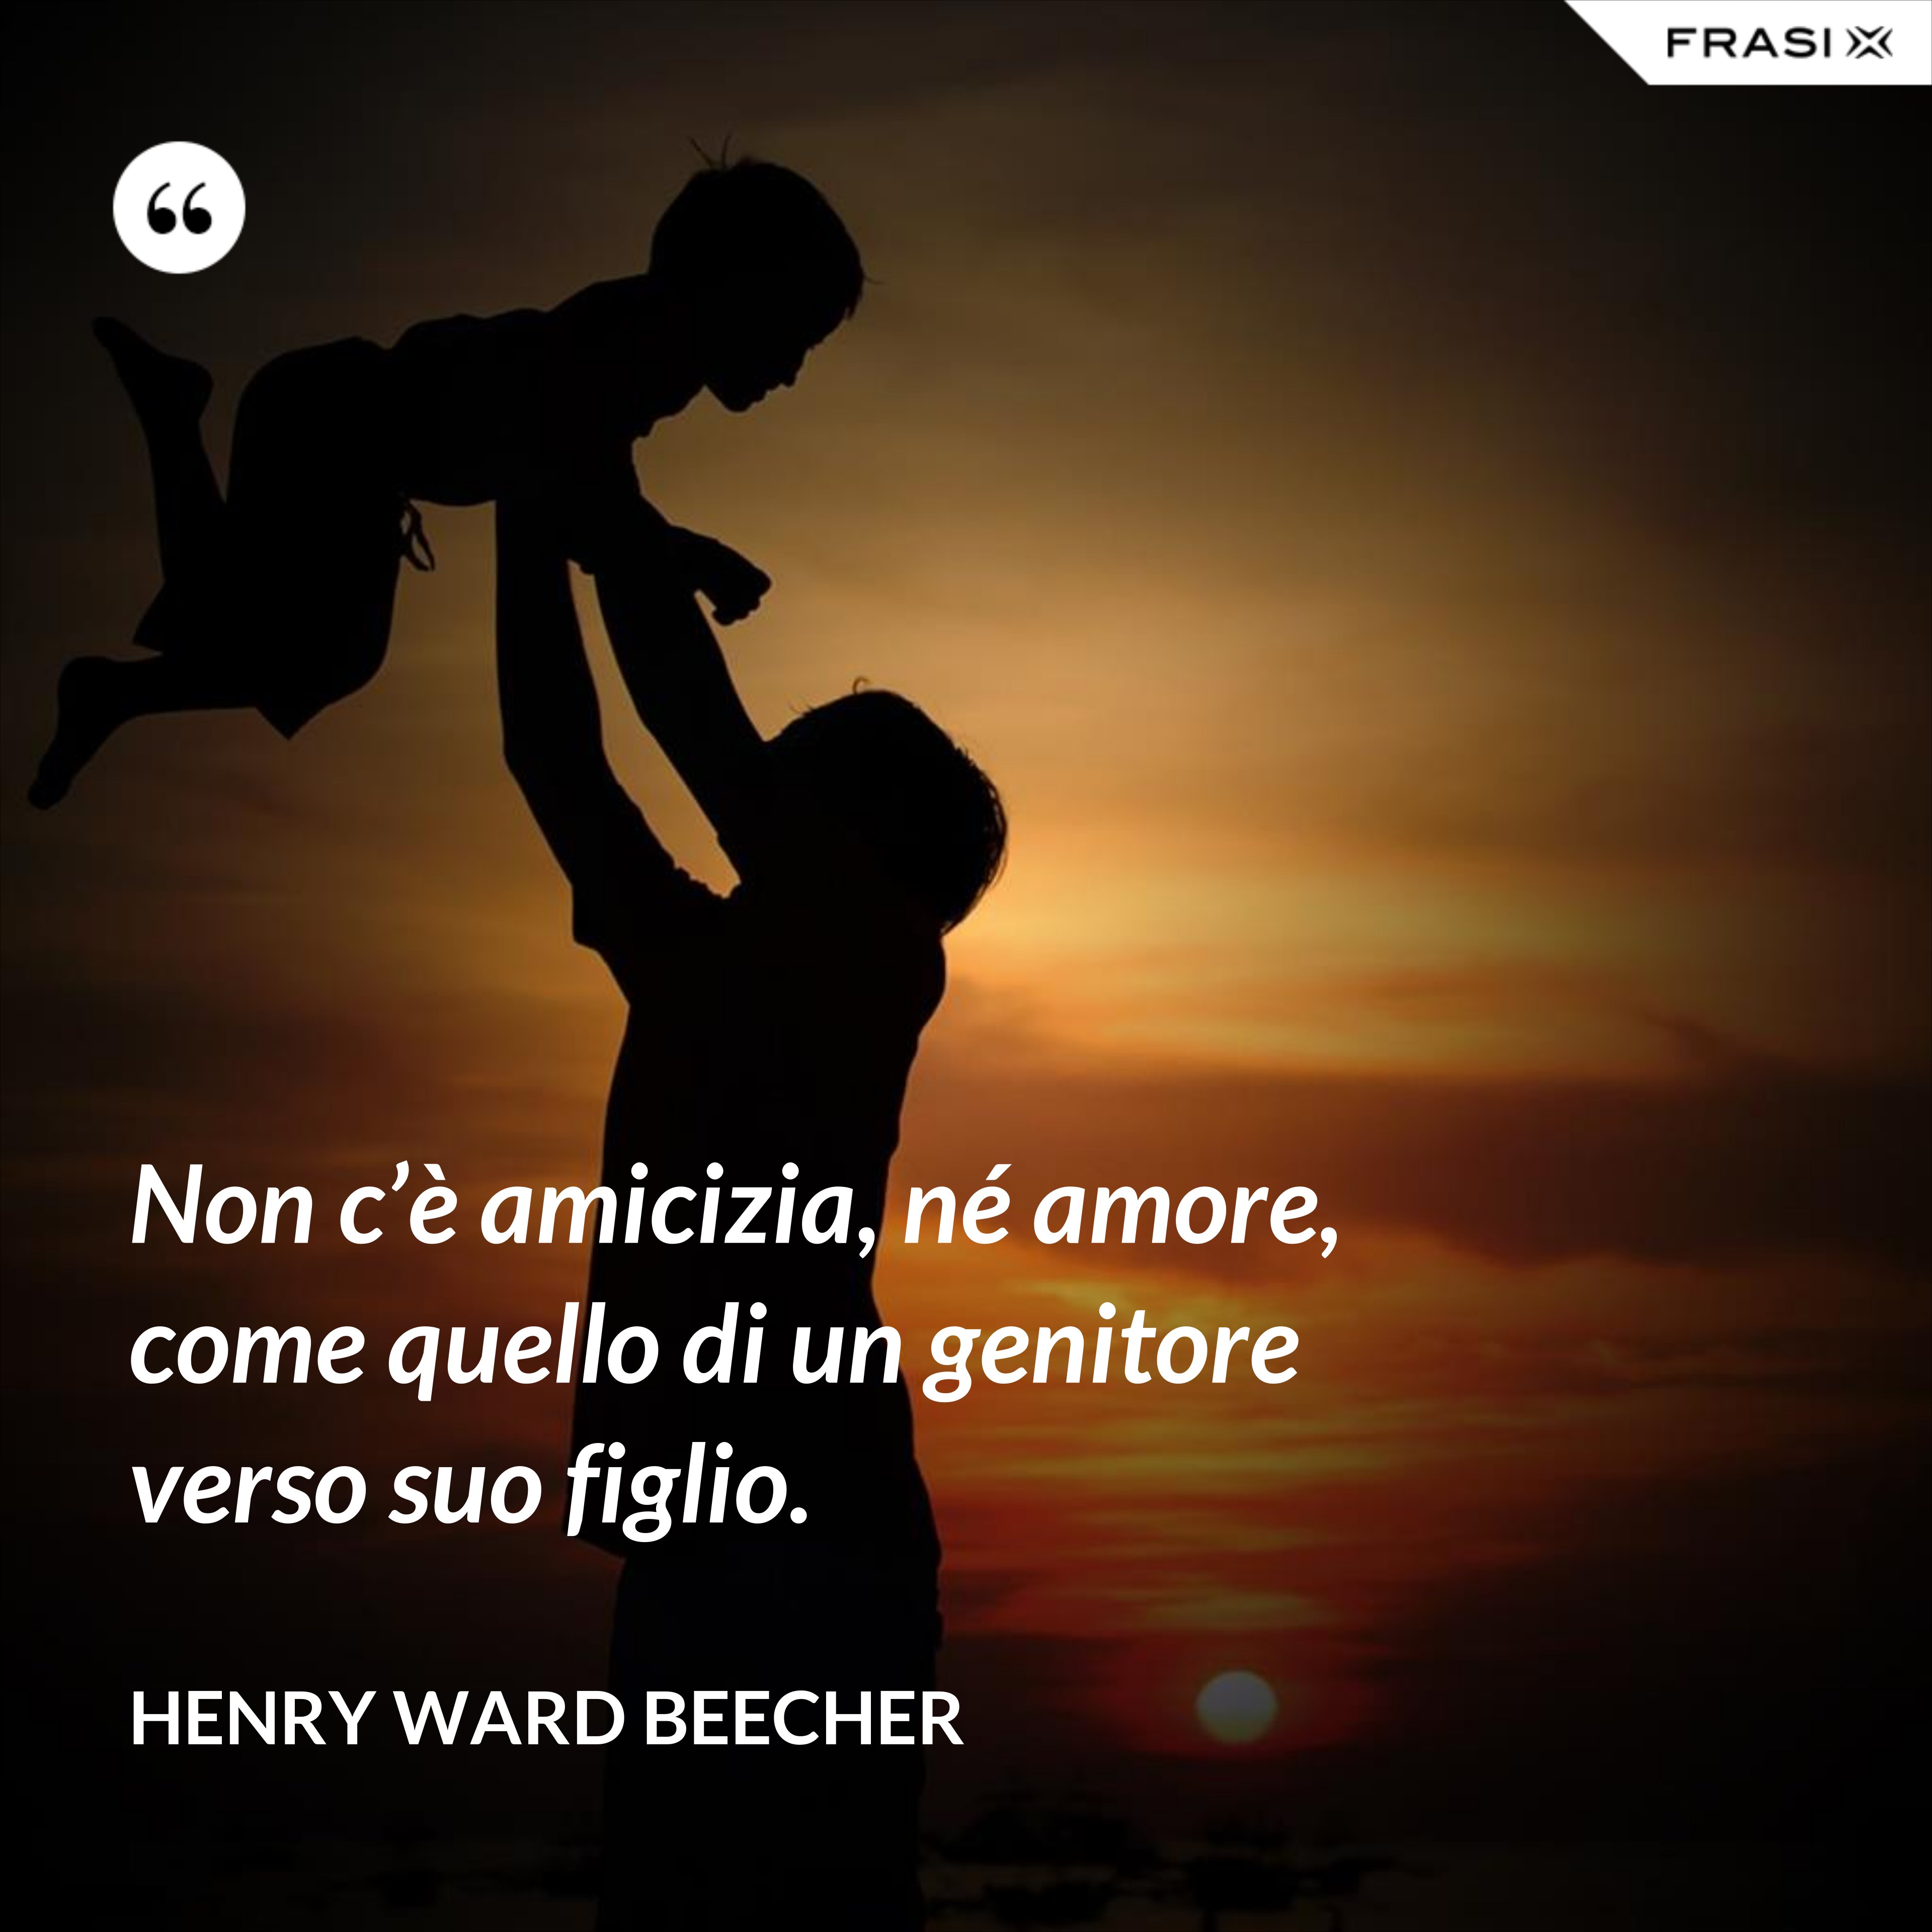 Non c’è amicizia, né amore, come quello di un genitore verso suo figlio. - Henry Ward Beecher